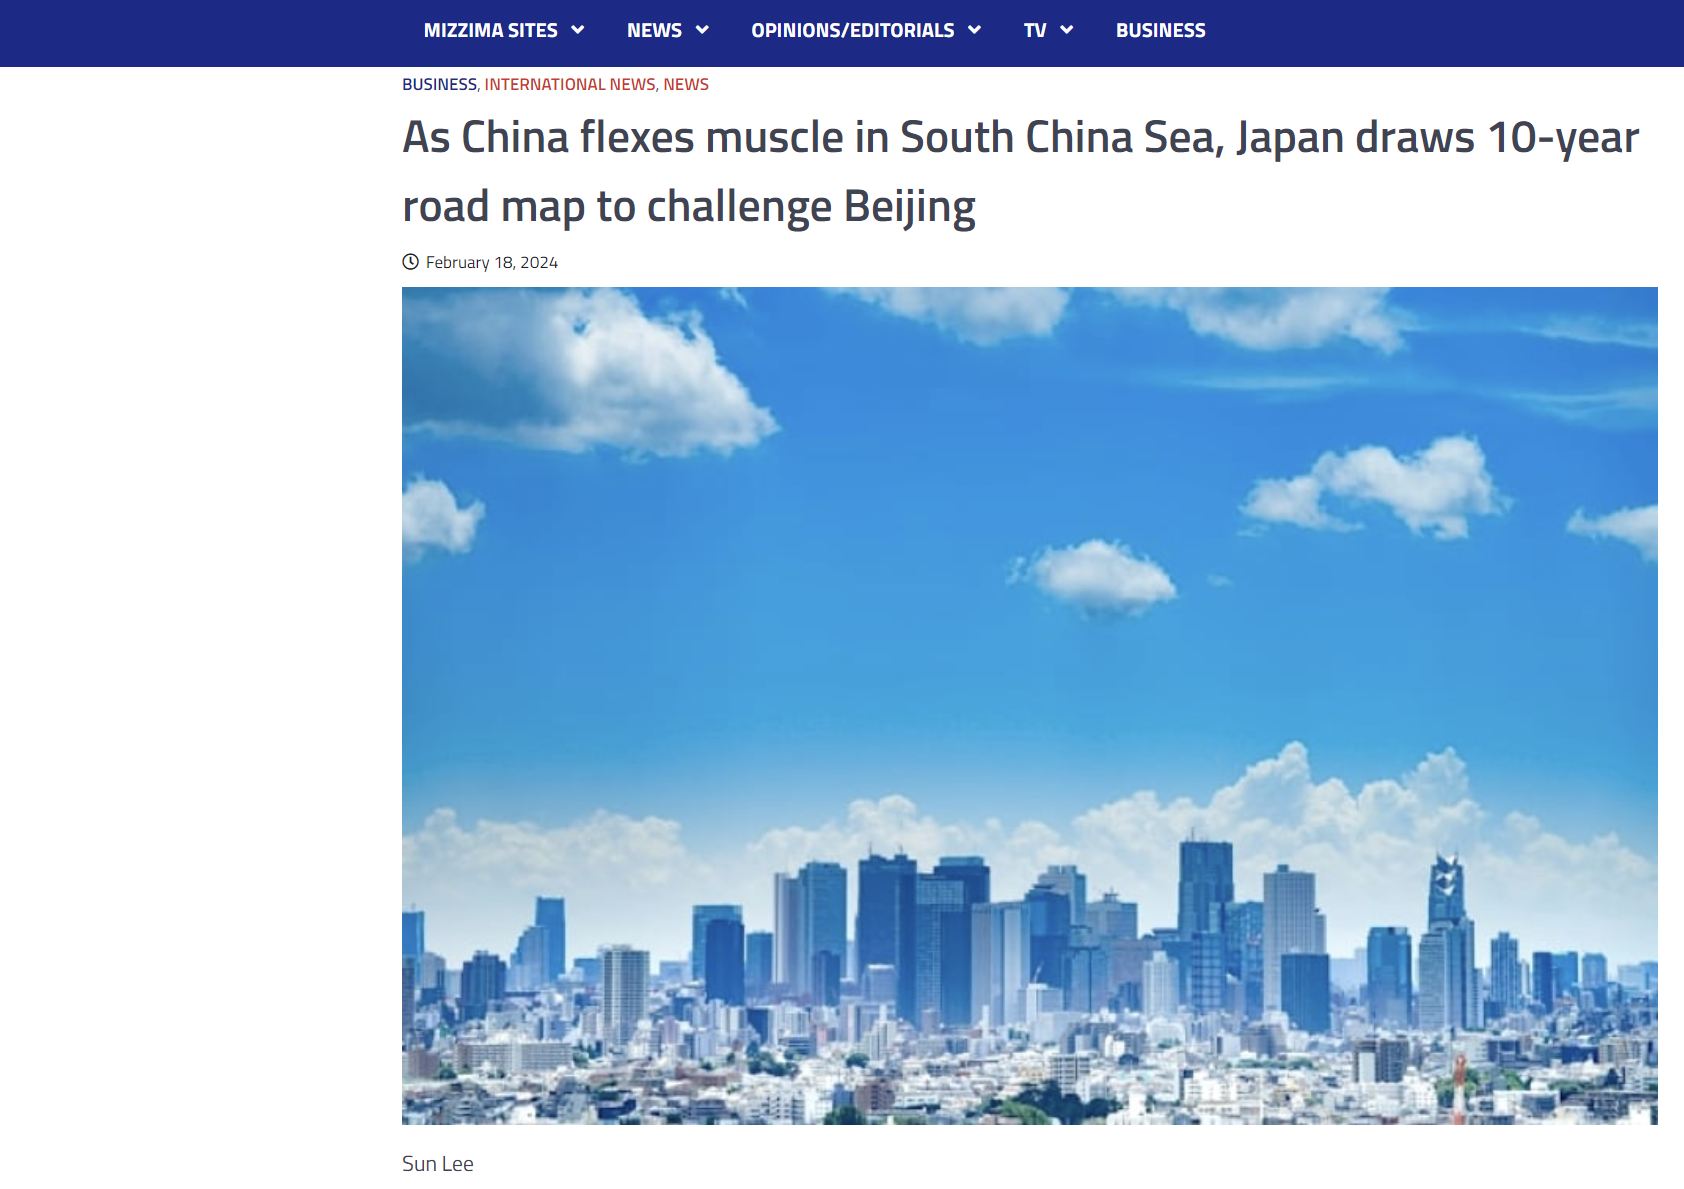 Η Ιαπωνία σχεδιάζει οδικό χάρτη 10 ετών για να αμφισβητήσει το Πεκίνο